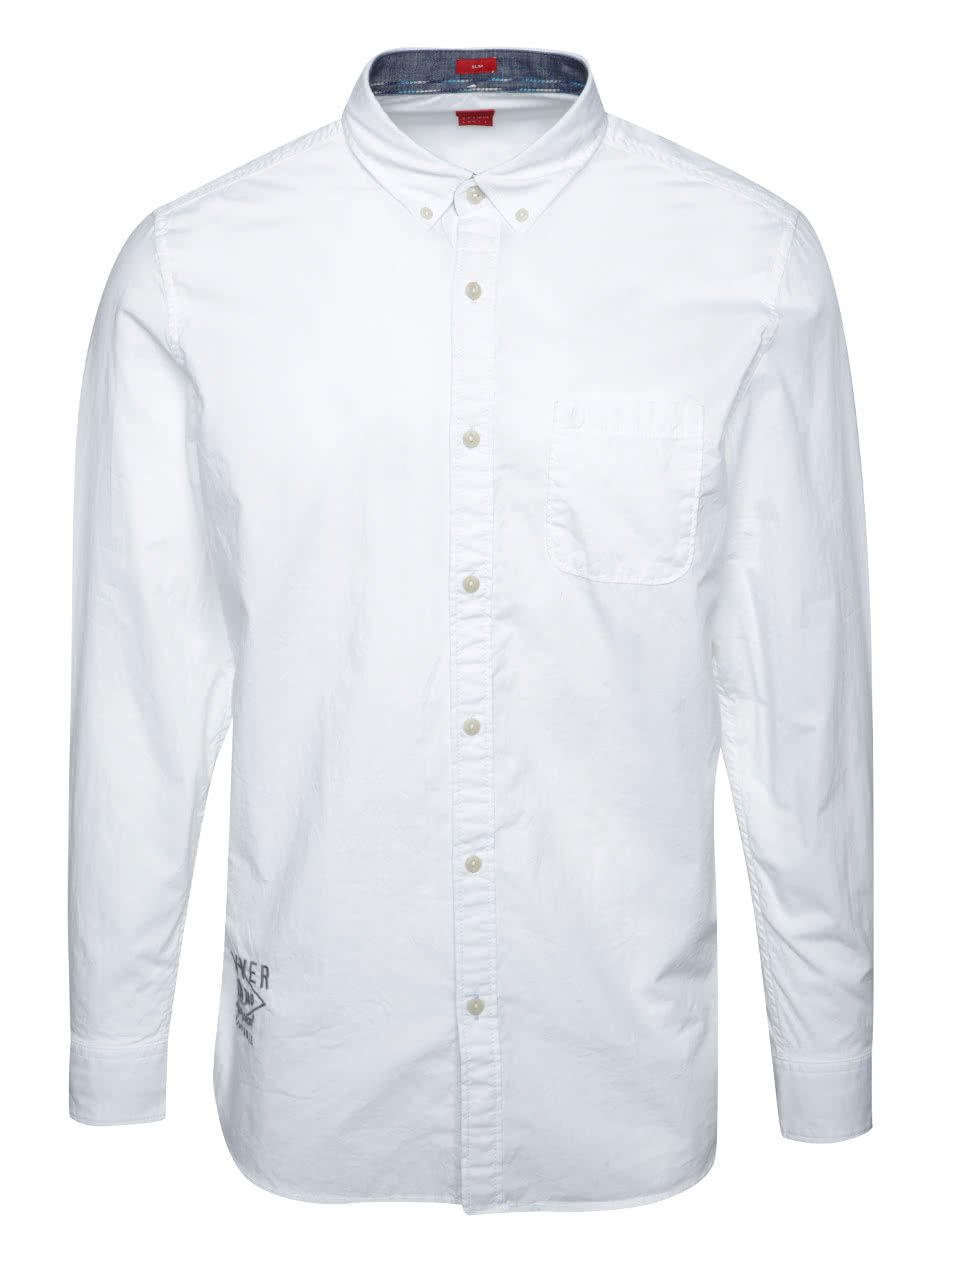 Bílá pánská slim fit košile s jemným vzorováním s.Oliver